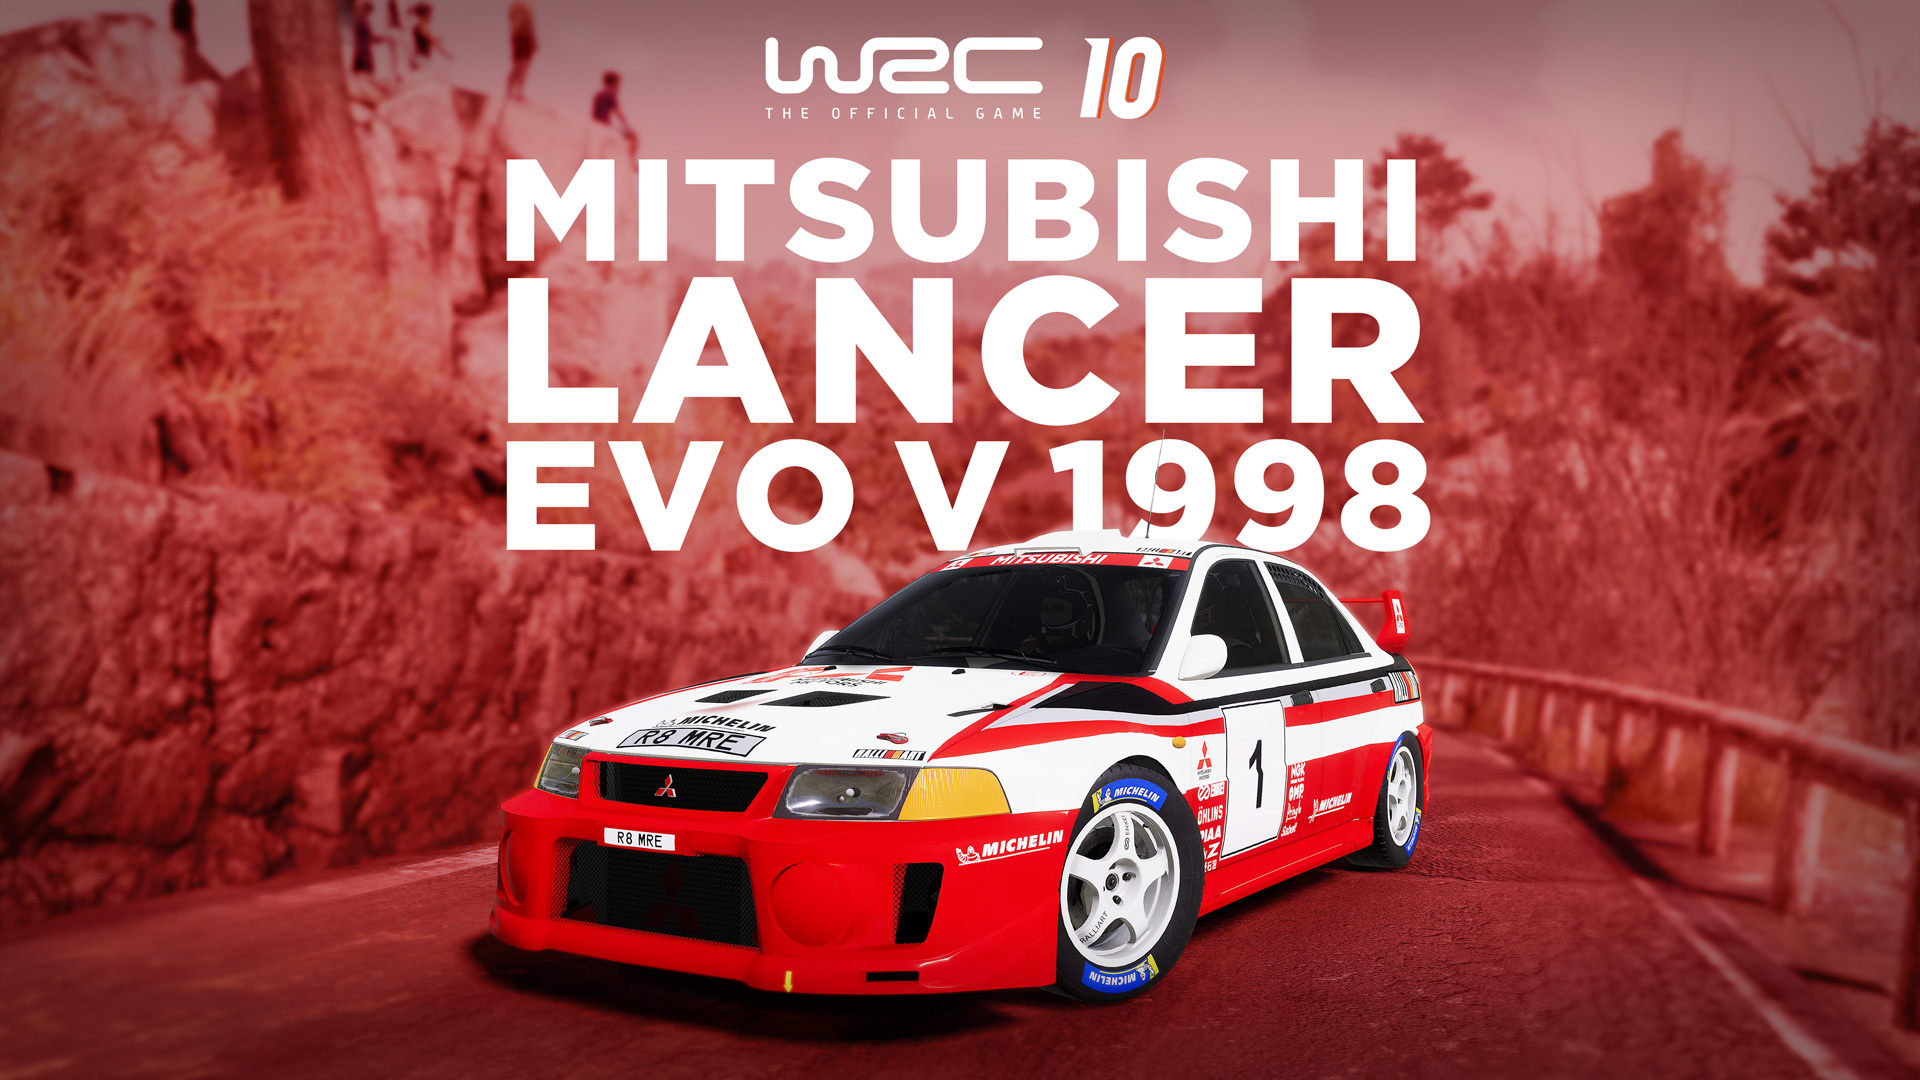 WRC 10 Mitsubishi Lancer Evo V 1998